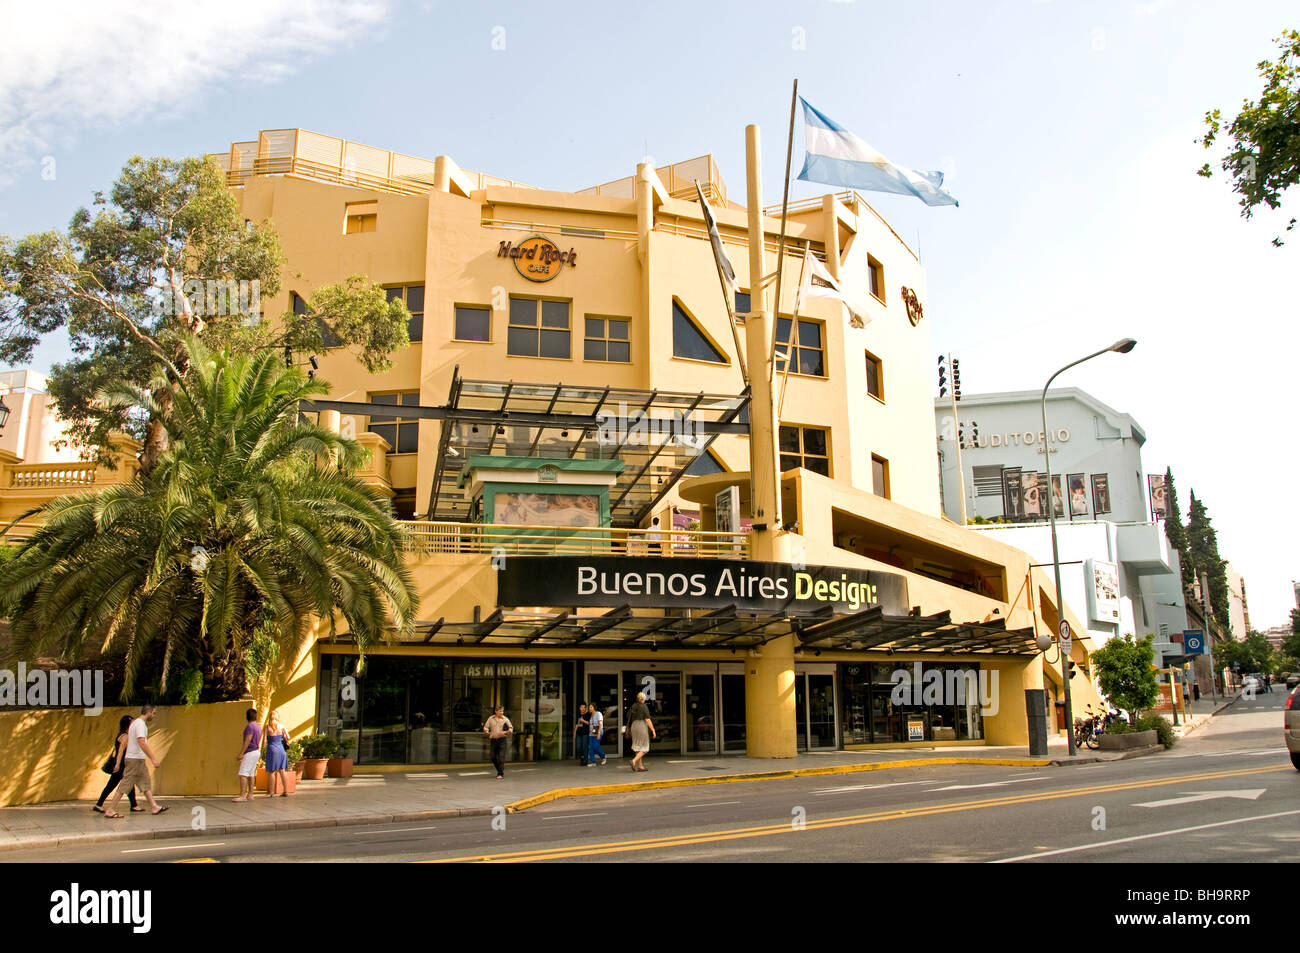 Buenos Aires Design Moderno Recoleta Shopping Mall Argentina Foto Stock